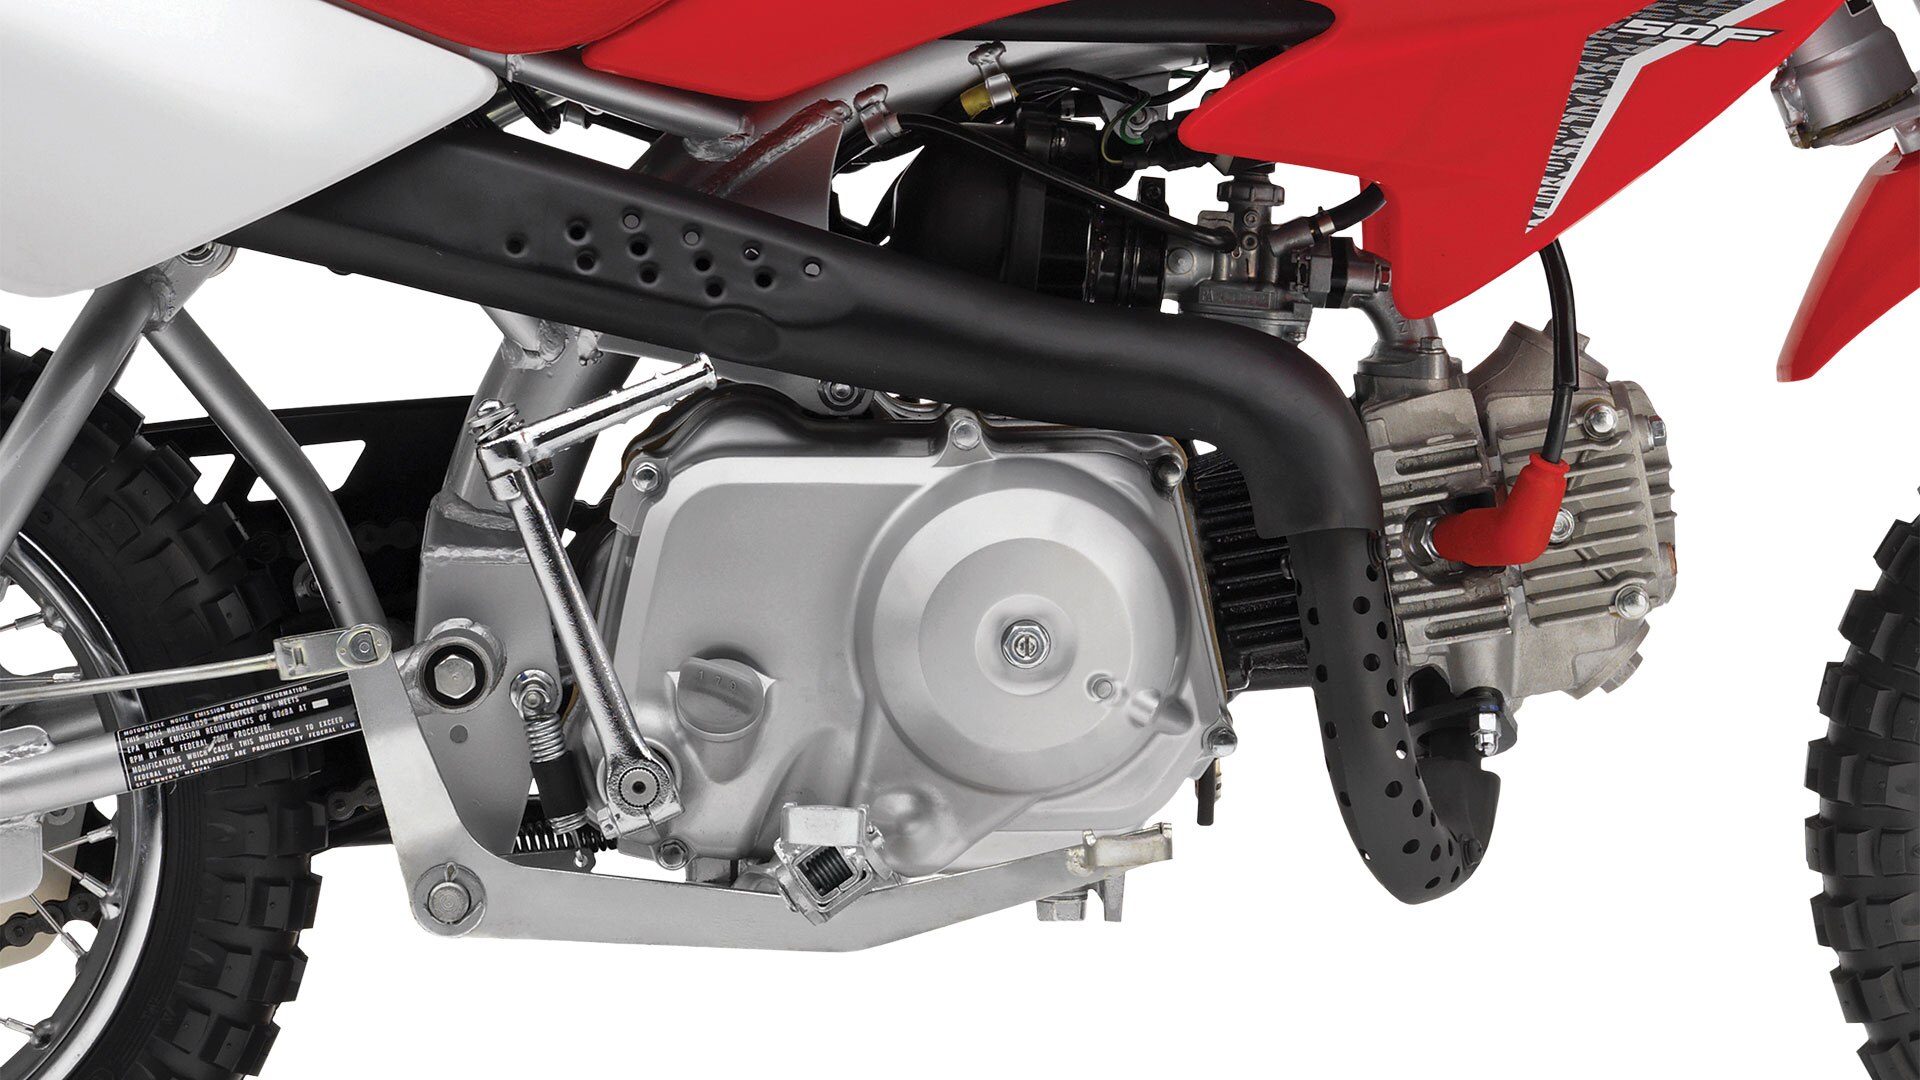 2021 Honda CRF50F|New Honda Dirt Bike Models Red Deer ...